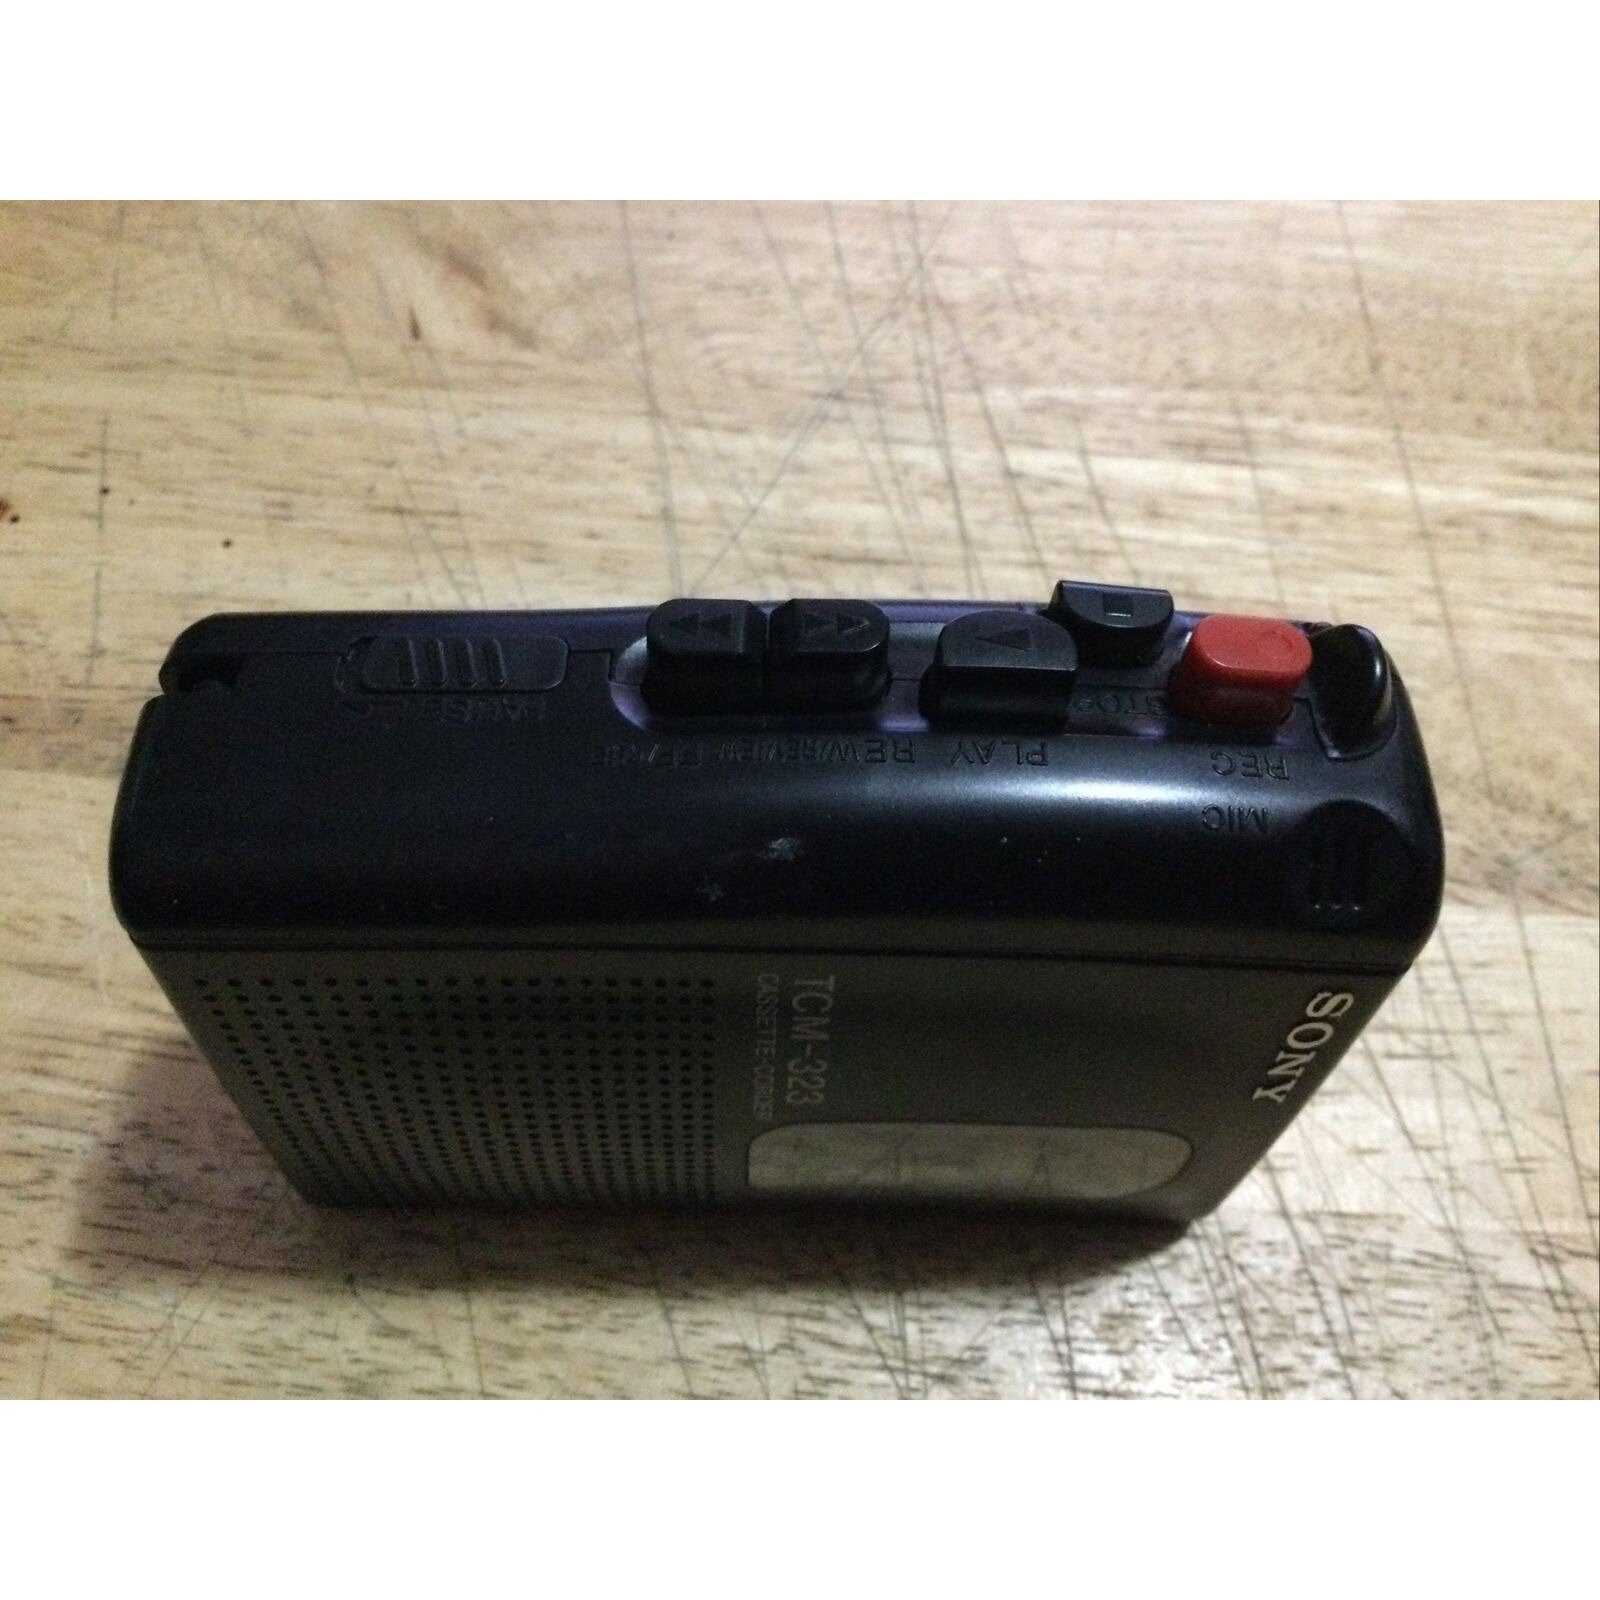 Sony Walkman TCM-323 Cassette-Corder Built In Mic Speaker